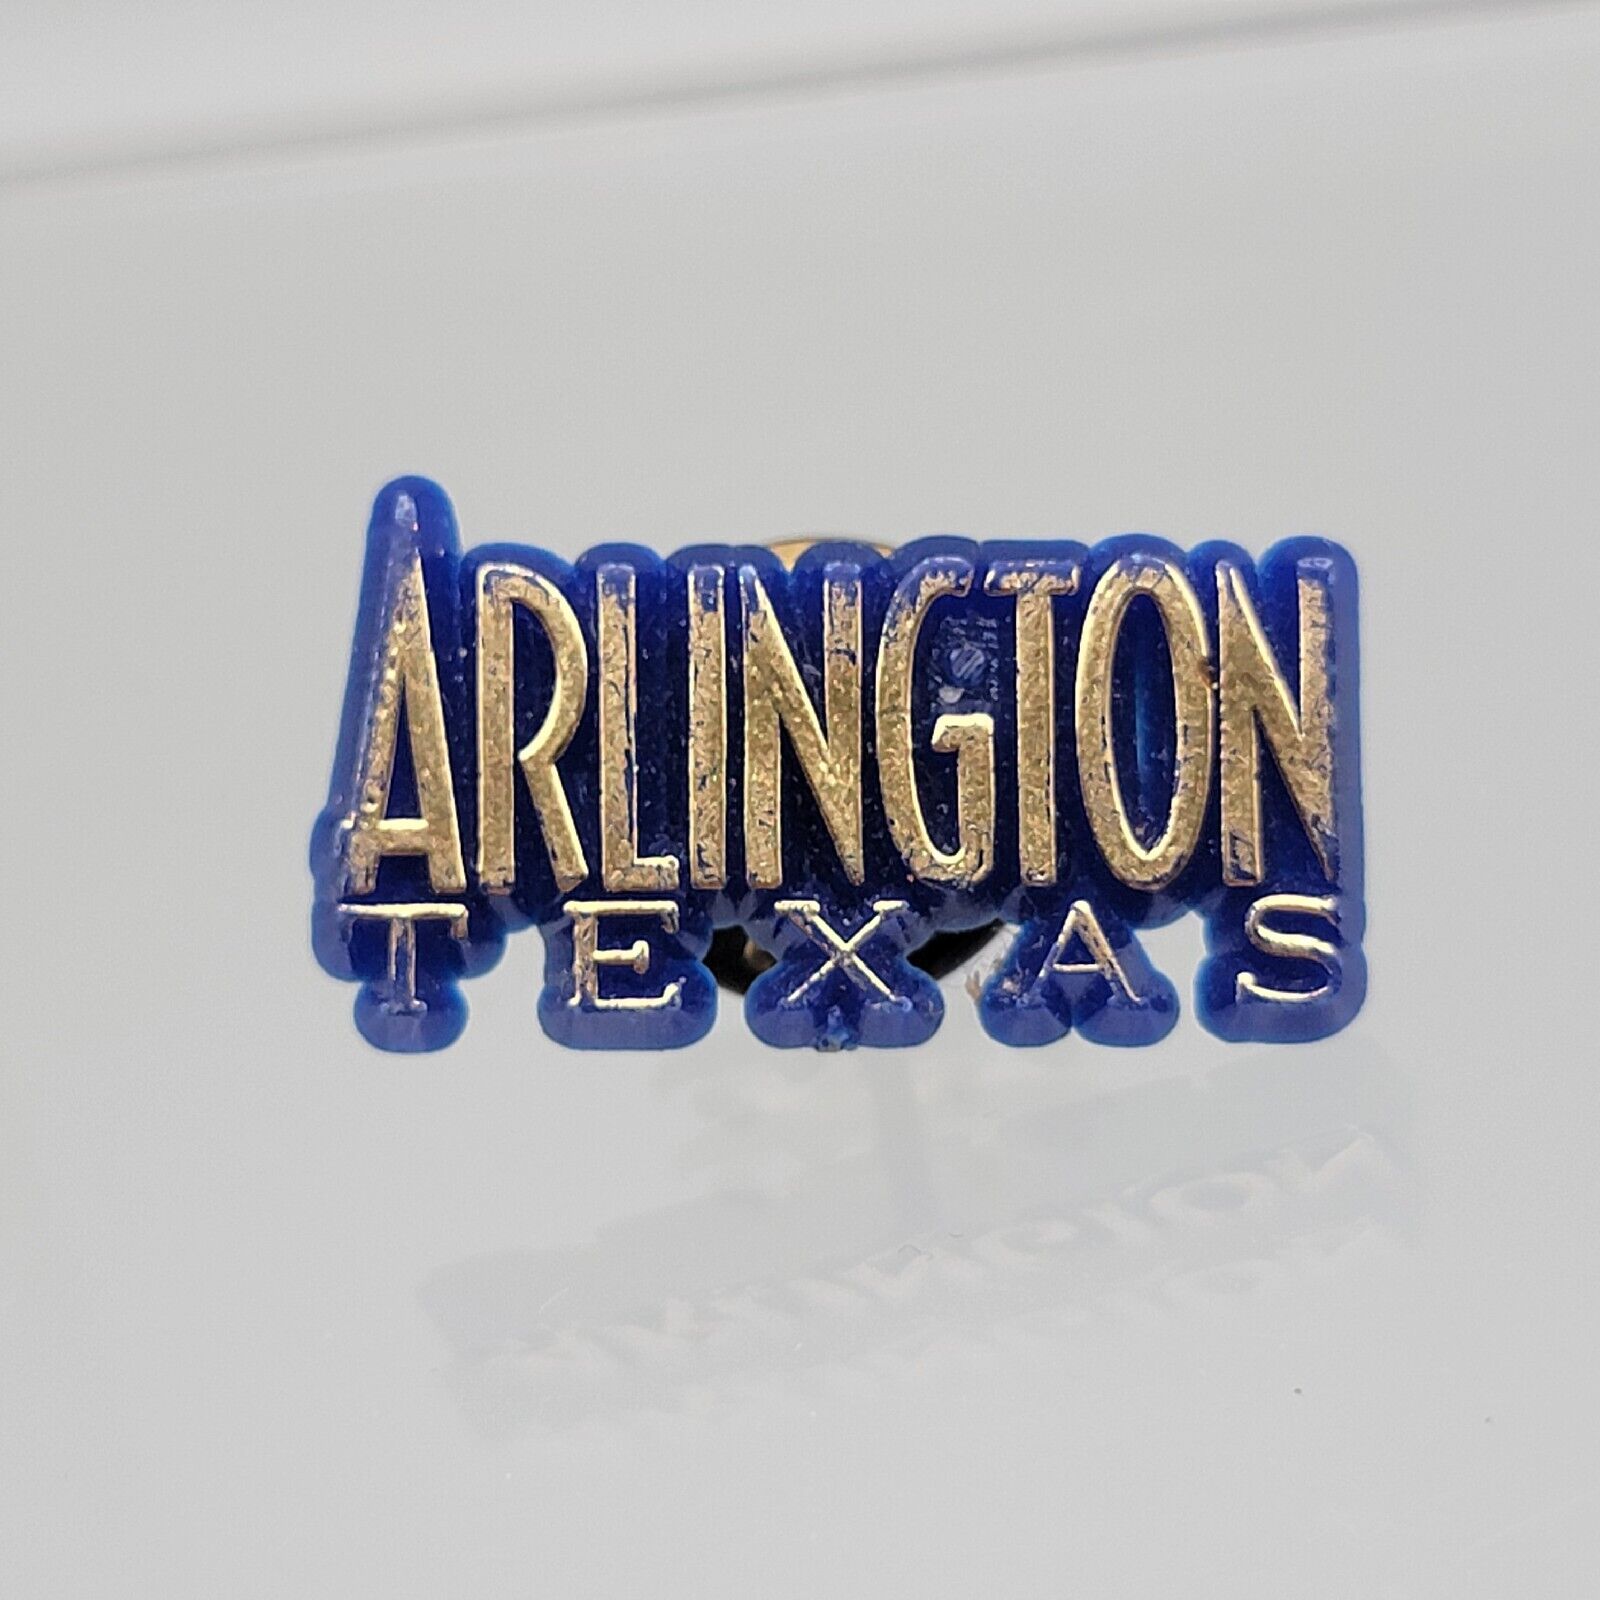 VTG Arlington Texas Pin Button Hat Lapel Tie Vest Blue Gold Plastic Spellout